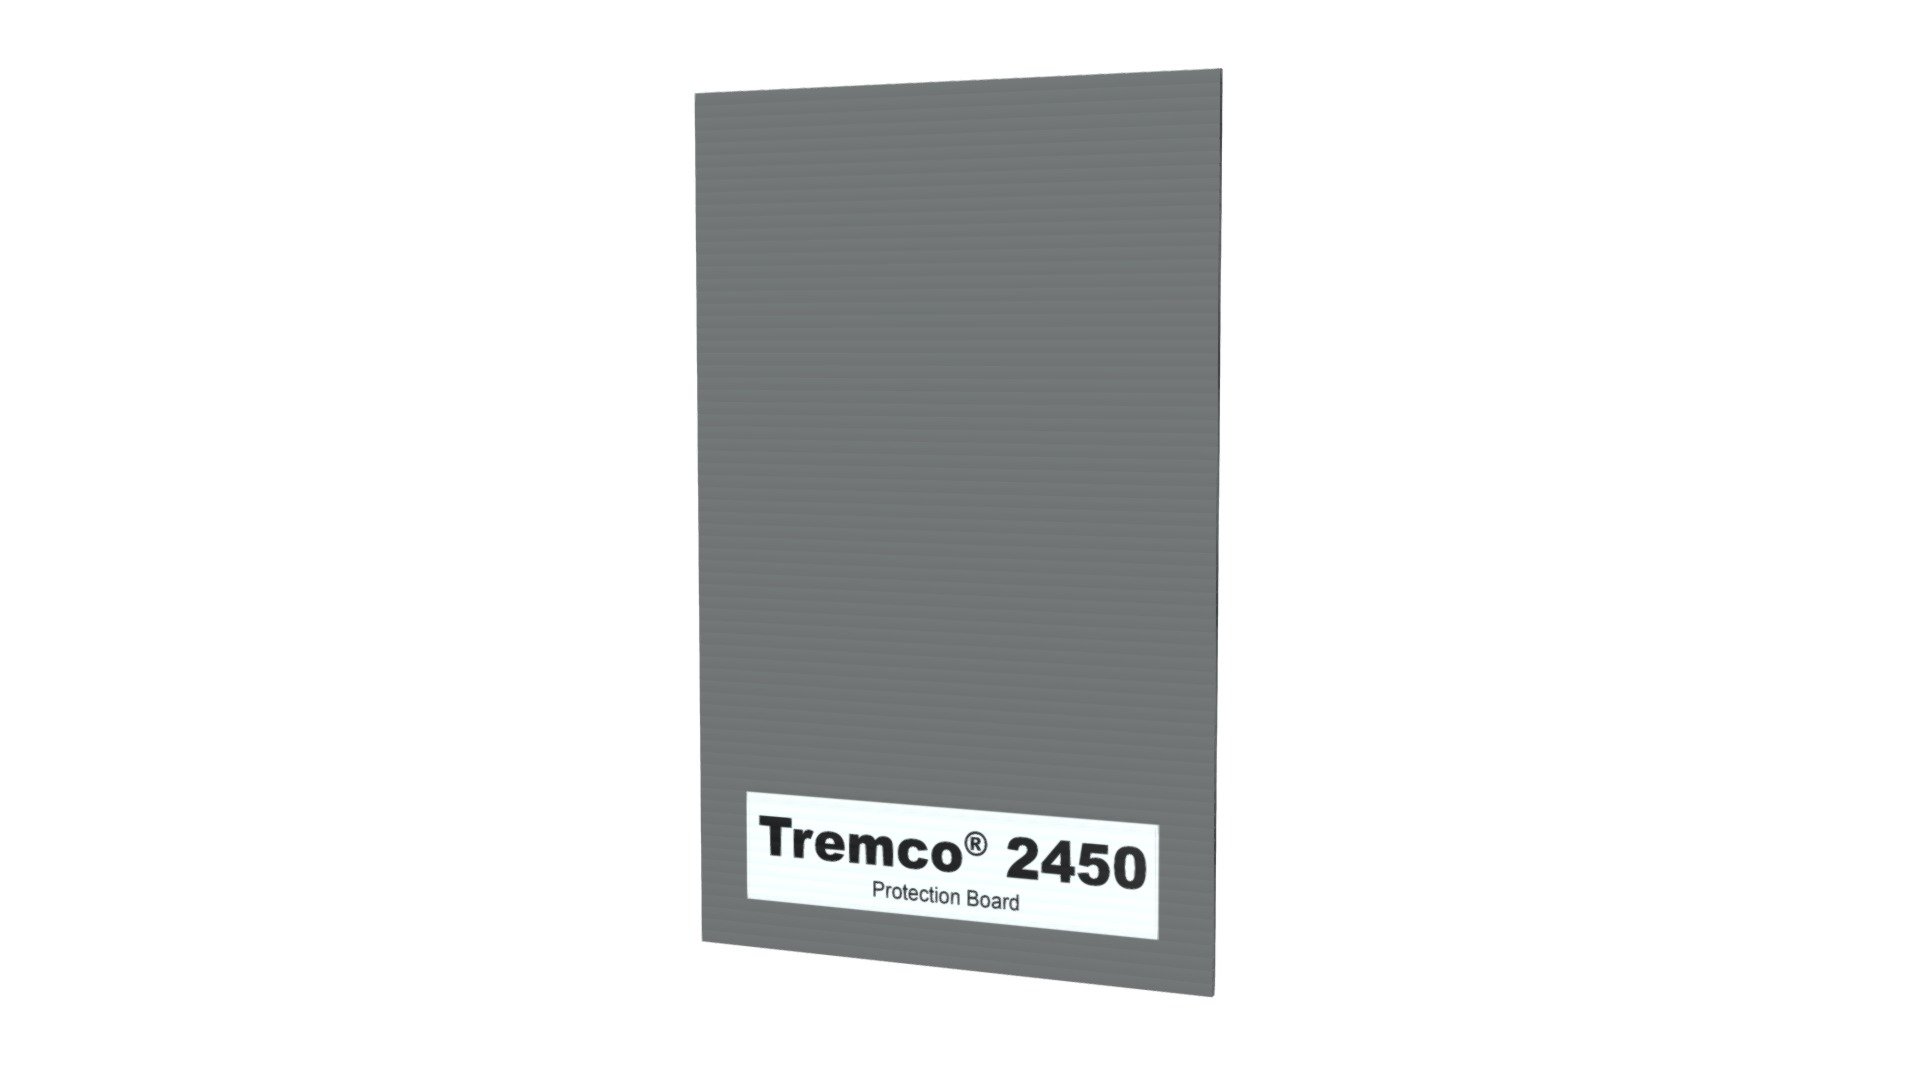 Tremco® 2450